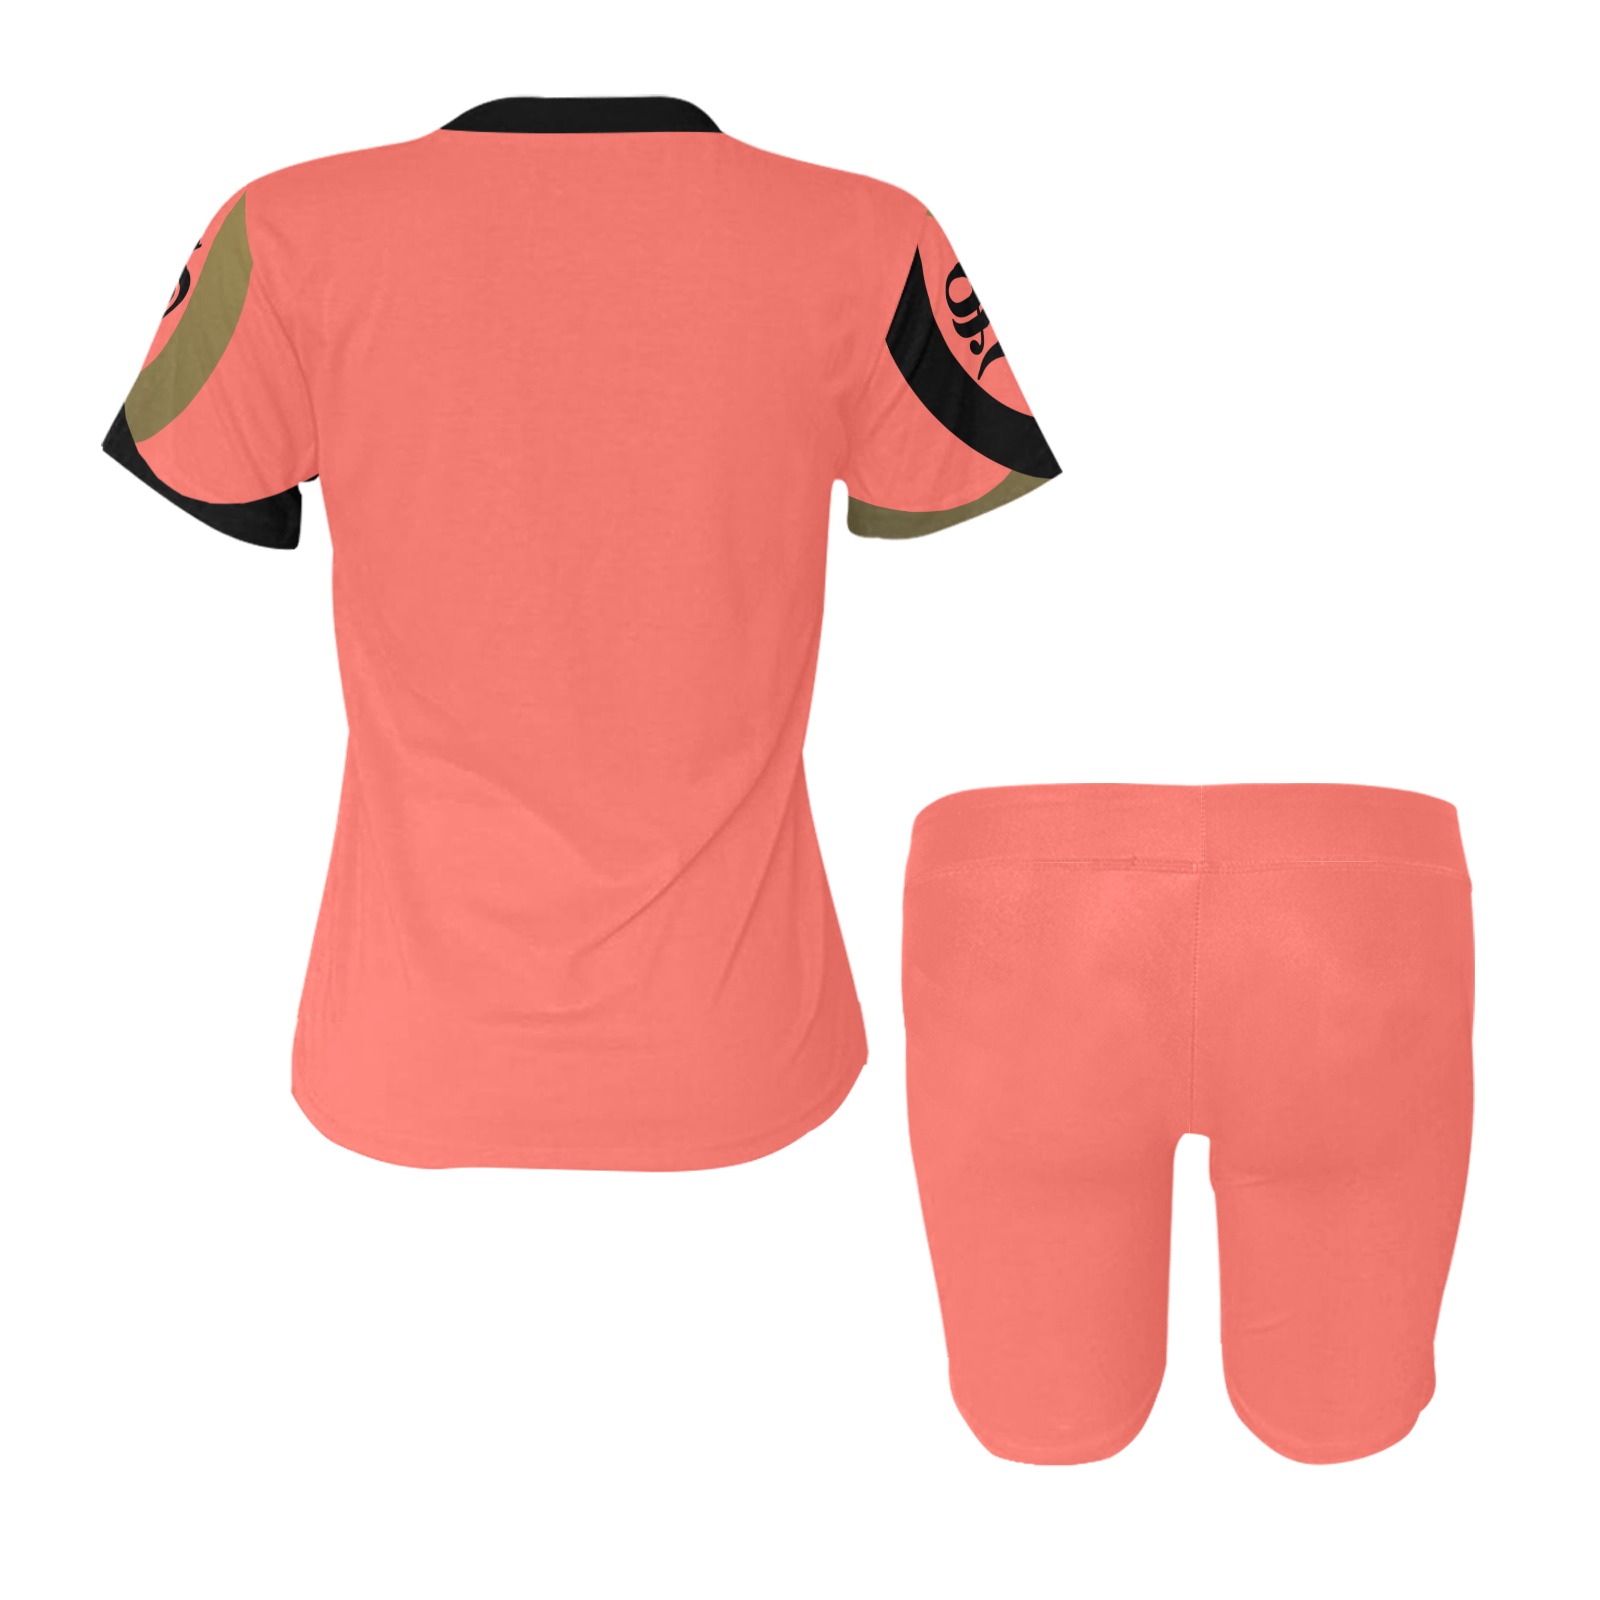 Peach Shirt & Shorts set Women's Short Yoga Set